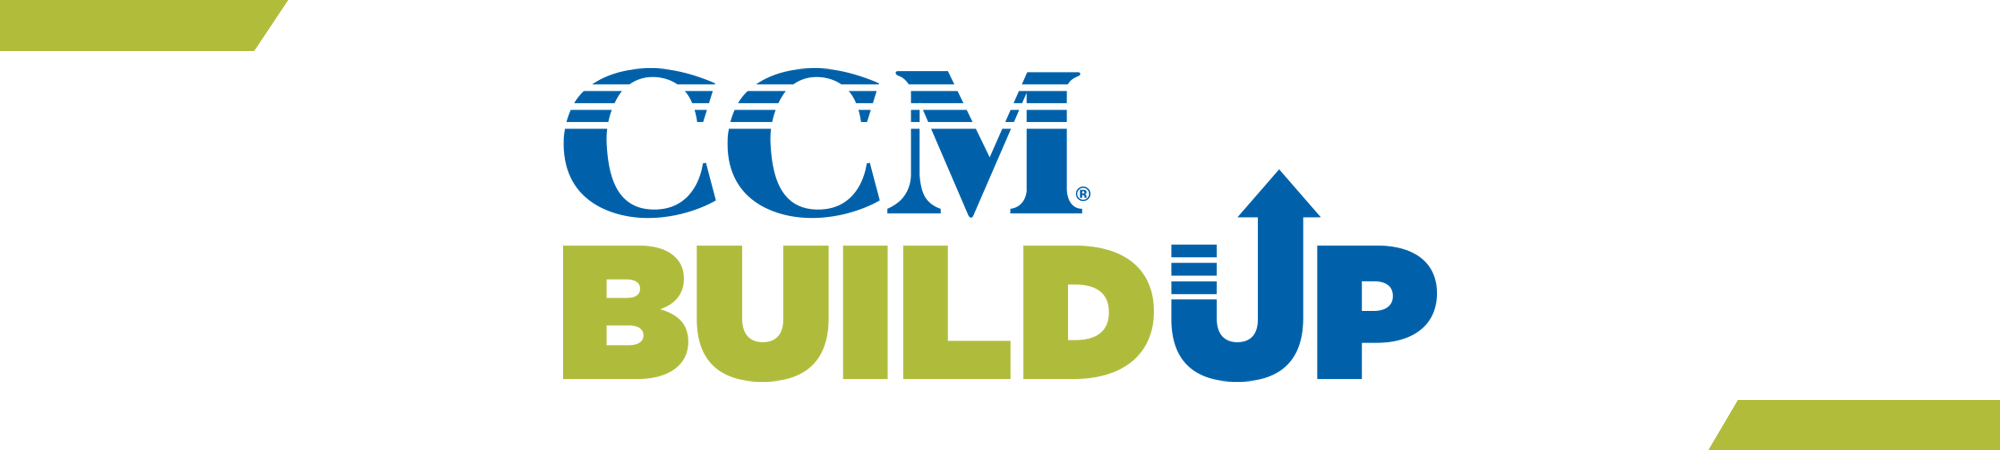 CCM Build Up